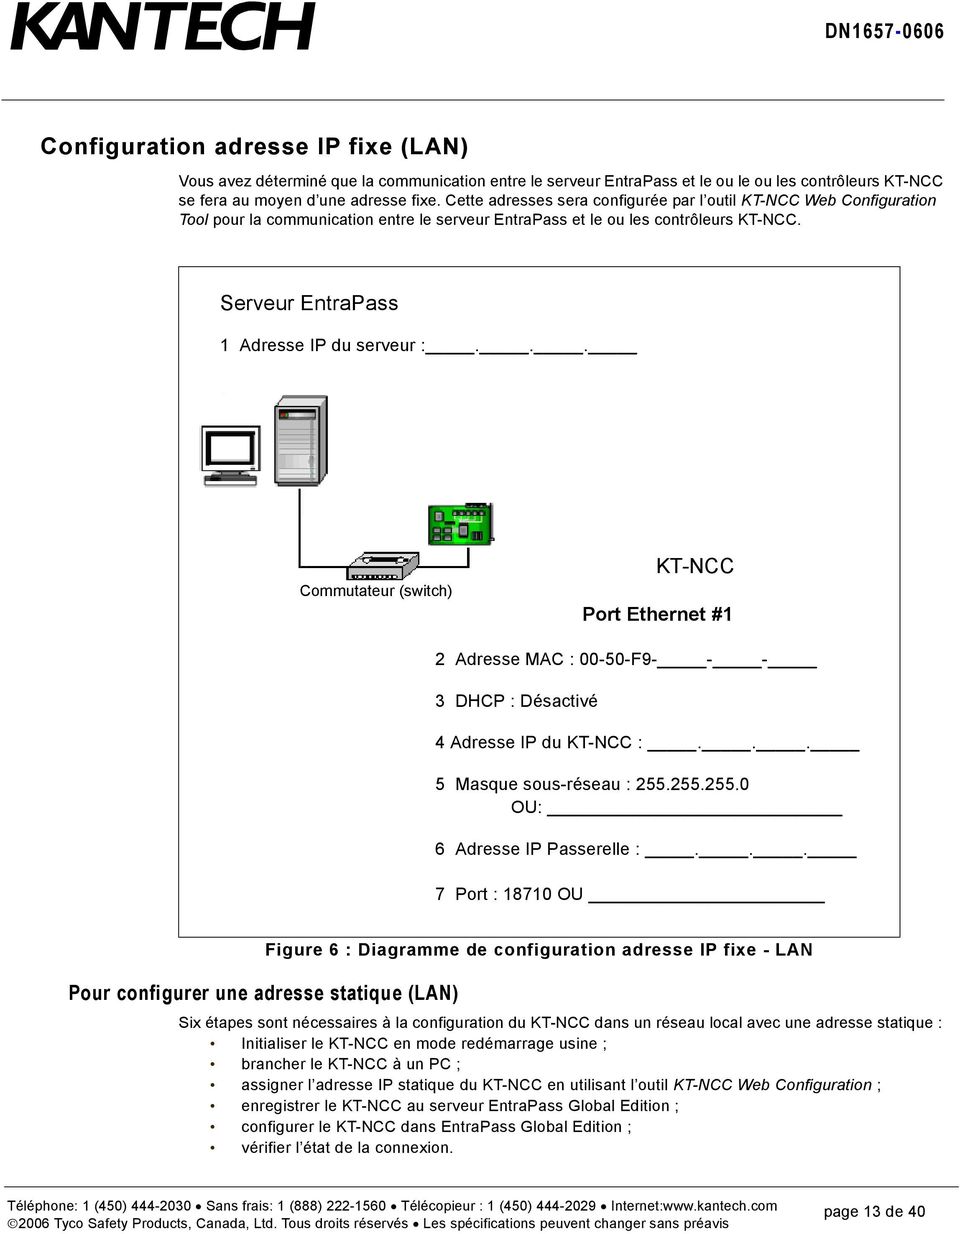 .. Commutateur (switch) KT-NCC Port Ethernet #1 2 Adresse MAC : 00-50-F9- - - 3 DHCP : Désactivé 4 Adresse IP du KT-NCC :... 5 Masque sous-réseau : 255.255.255.0 OU: 6 Adresse IP Passerelle :.